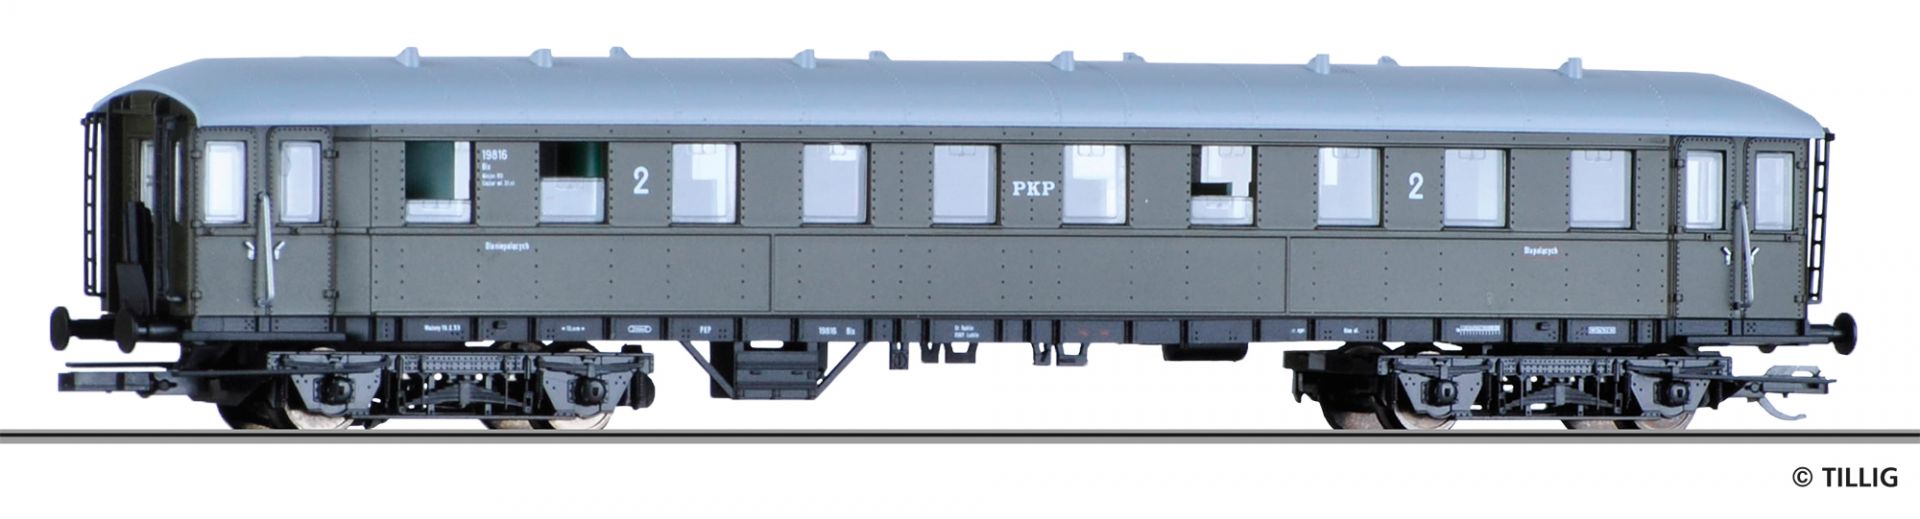 13355 | Reisezugwagen PKP